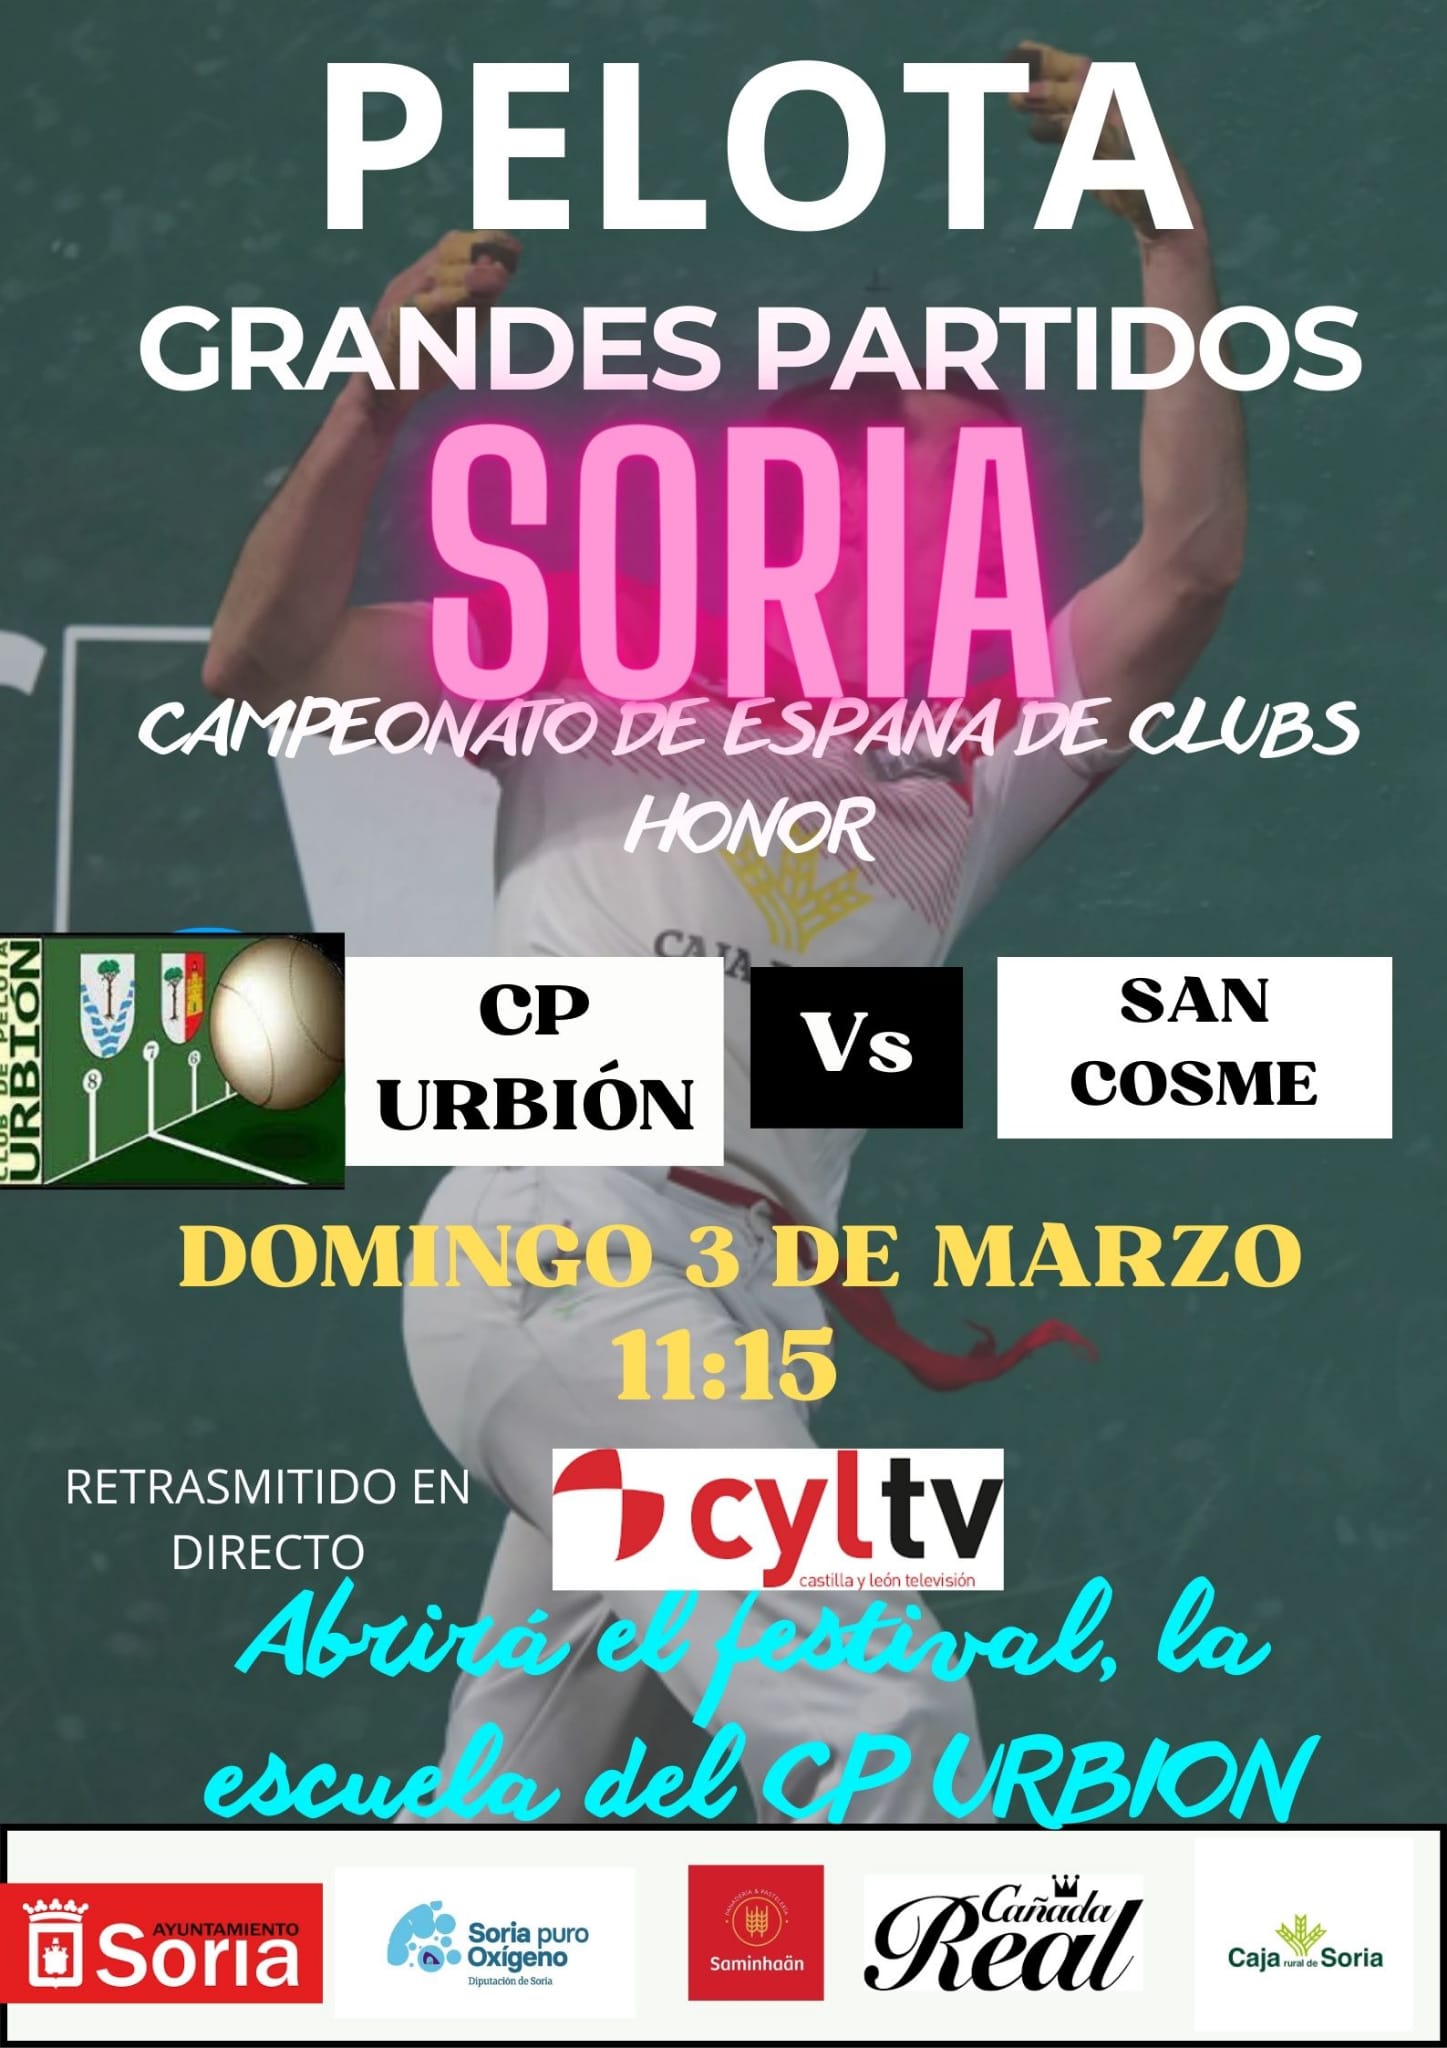 El Club Pelota Urbión se mide este fin de semana al CP San Cosme en Soria